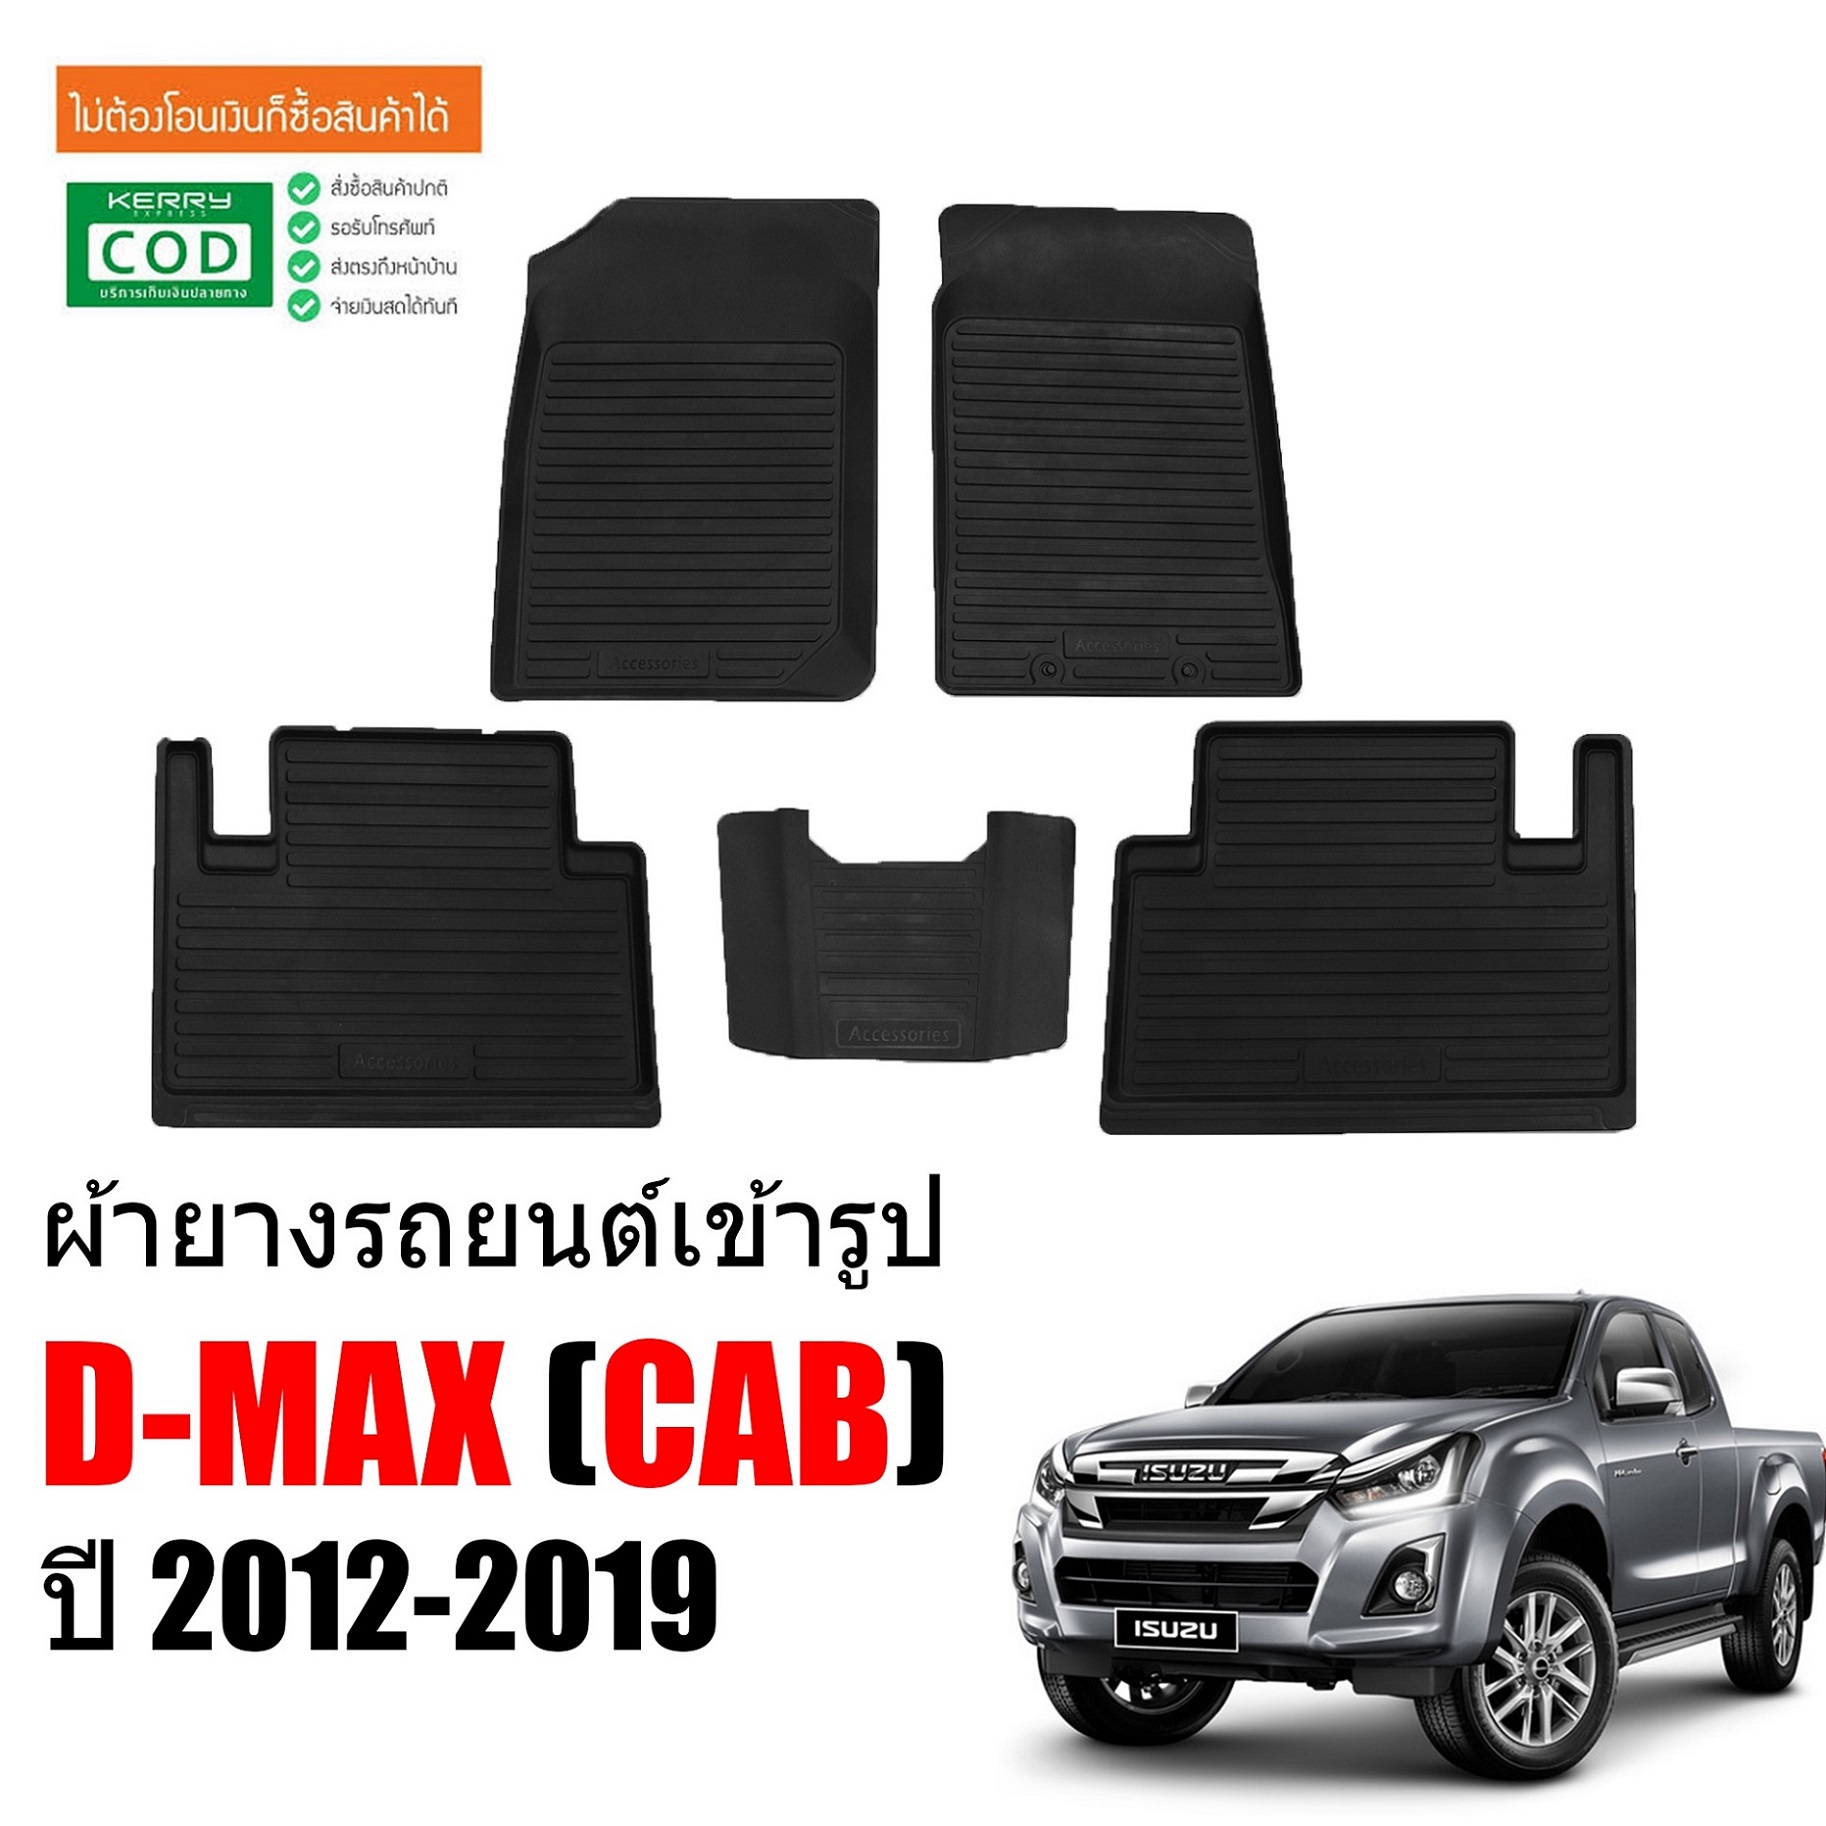 ผ้ายางรถยนต์เข้ารูป ISUZU D-MAX ปี 2012-2019 (CAB) พรมปูรถยนต์ พรมรถยนต์ ถาดยาง ปูพื้นรถยนต์ พรมยาง ยกขอบ พรมปู พรมรองพื้นรถยนต์ พรมเข้ารูป DMAX พรม